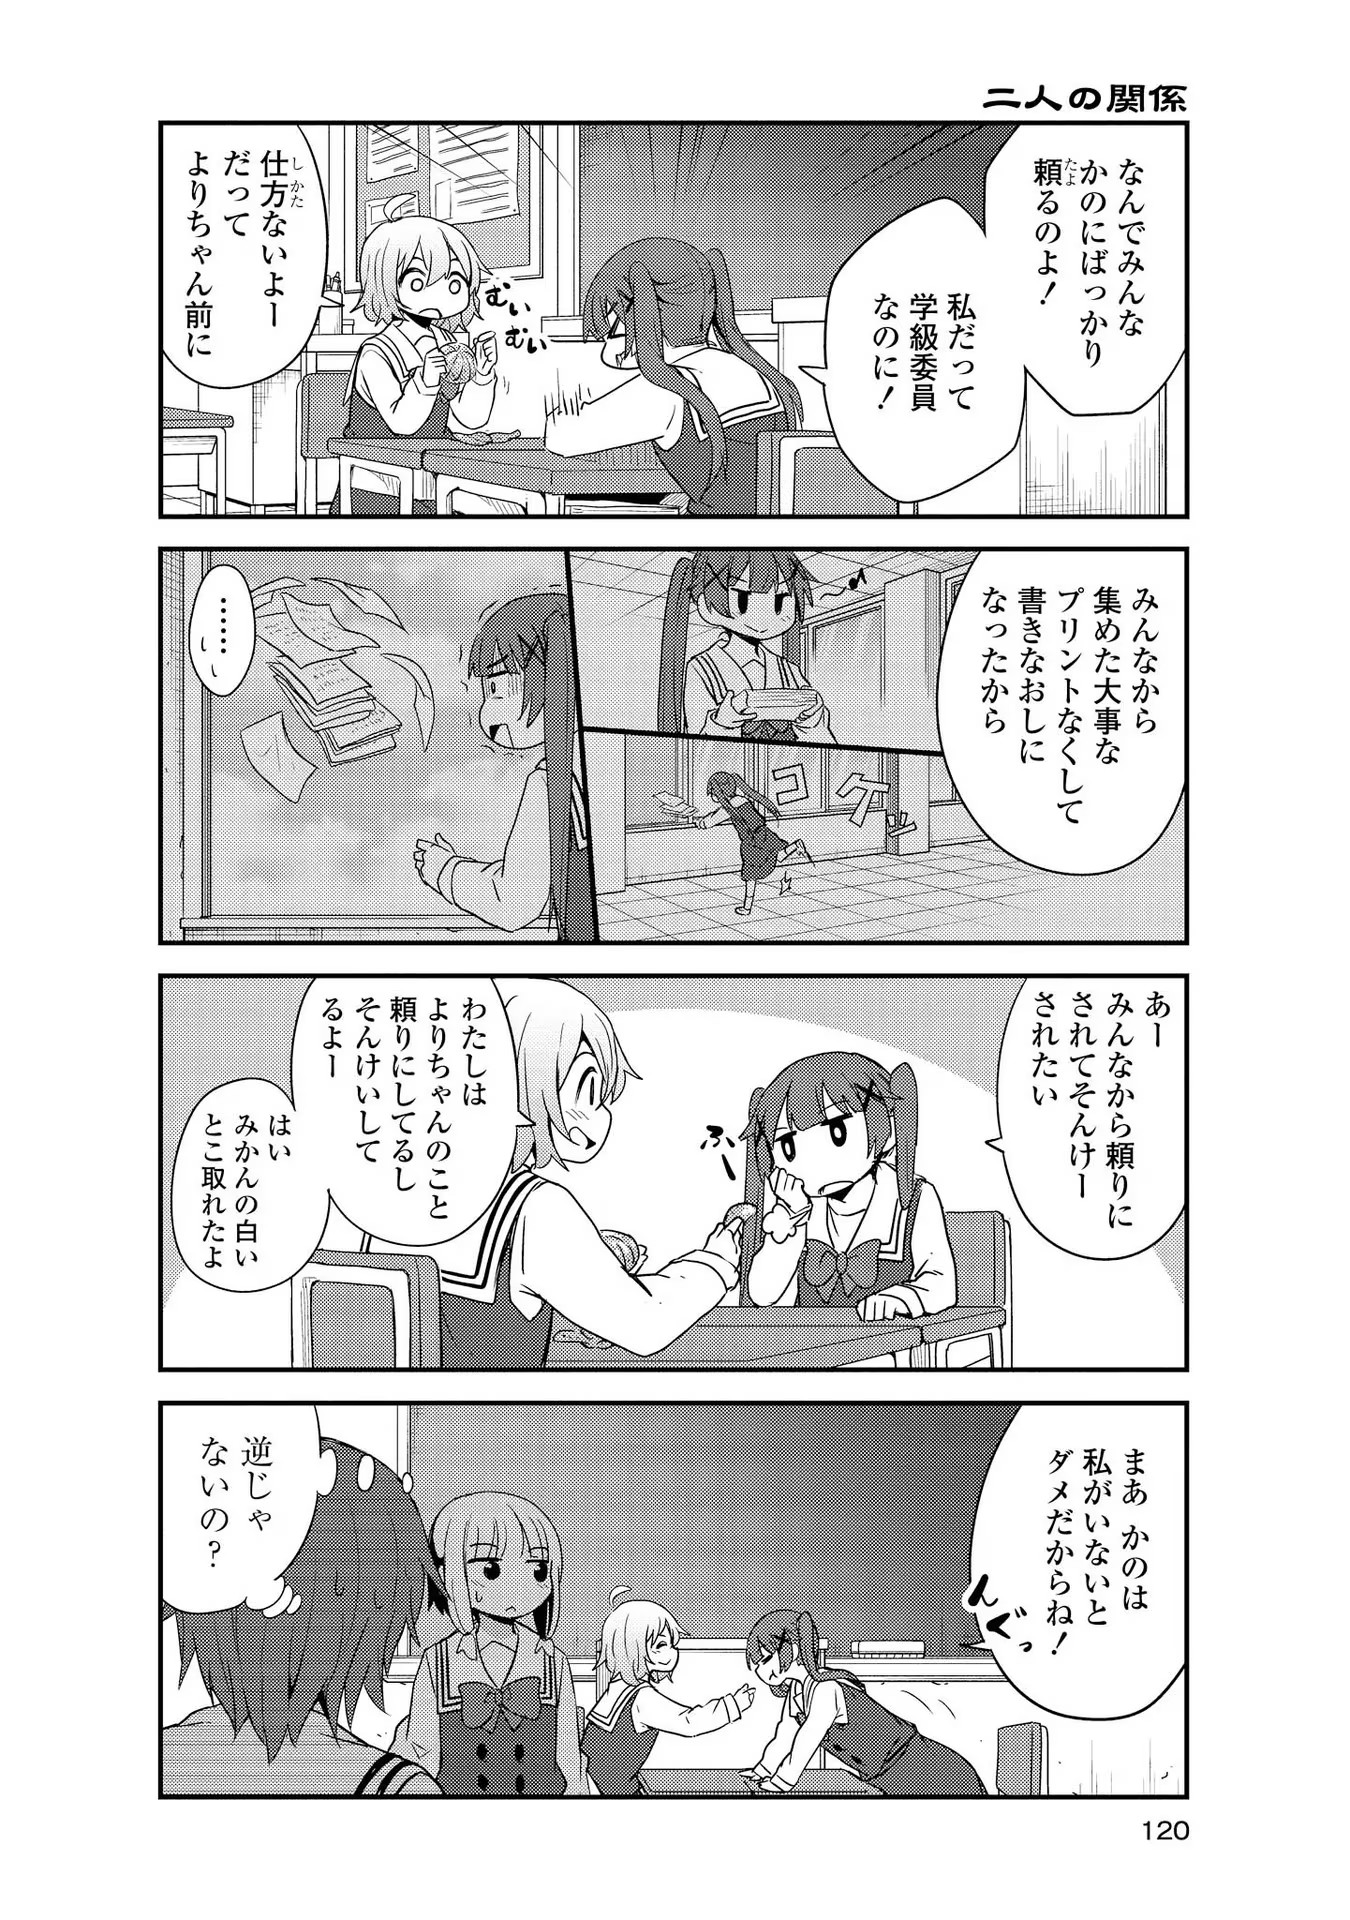 Watashi ni Tenshi ga Maiorita! - Chapter 28 - Page 4